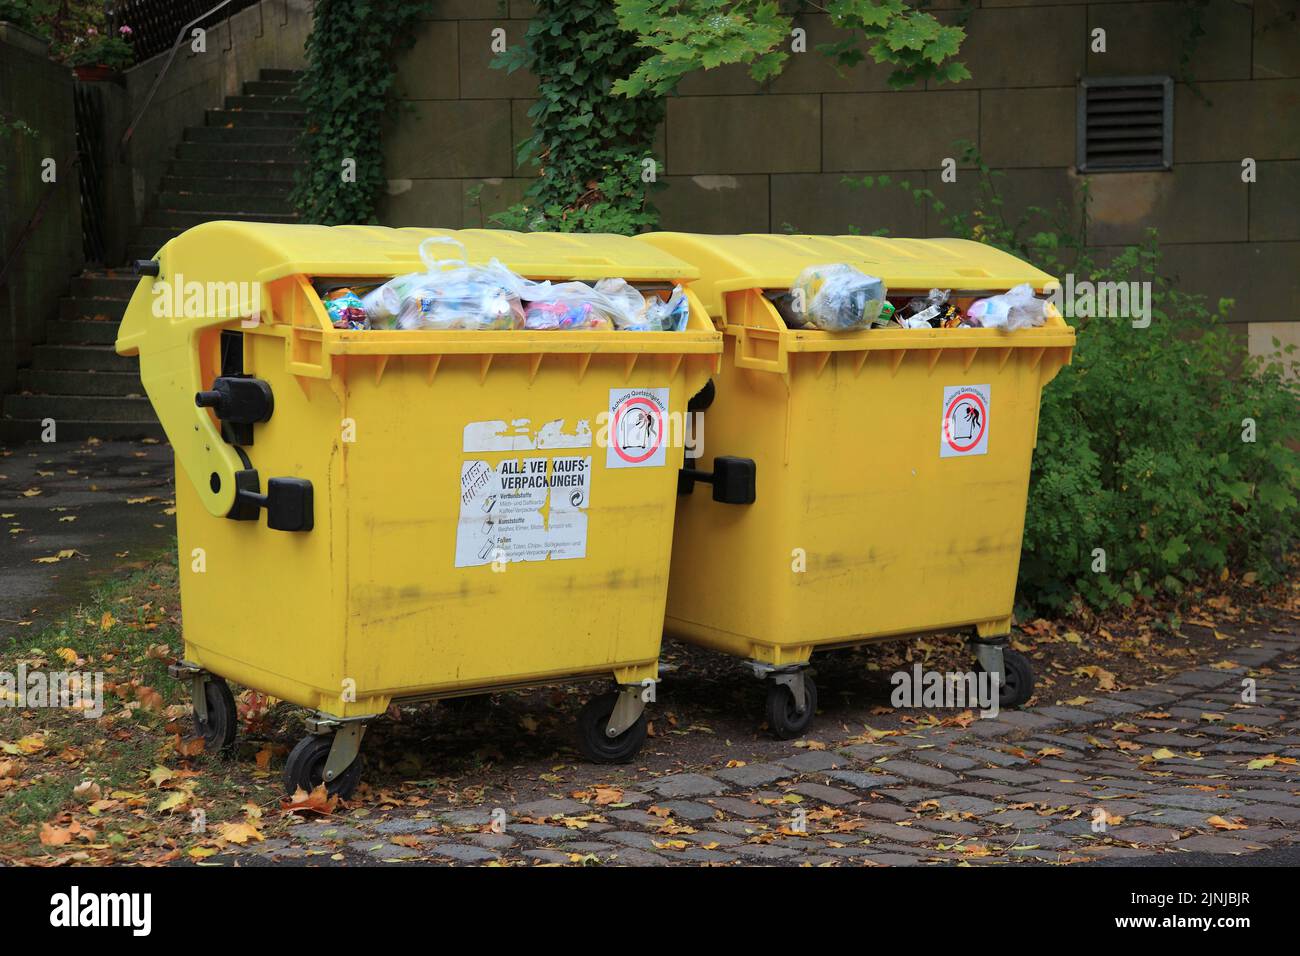 Müllsammlung, gelber Abfallcontainer für Verpackungsabfälle zur Verwendung im Recycling, Kunststoffverpackungen  /  Waste collection, yellow waste con Stock Photo